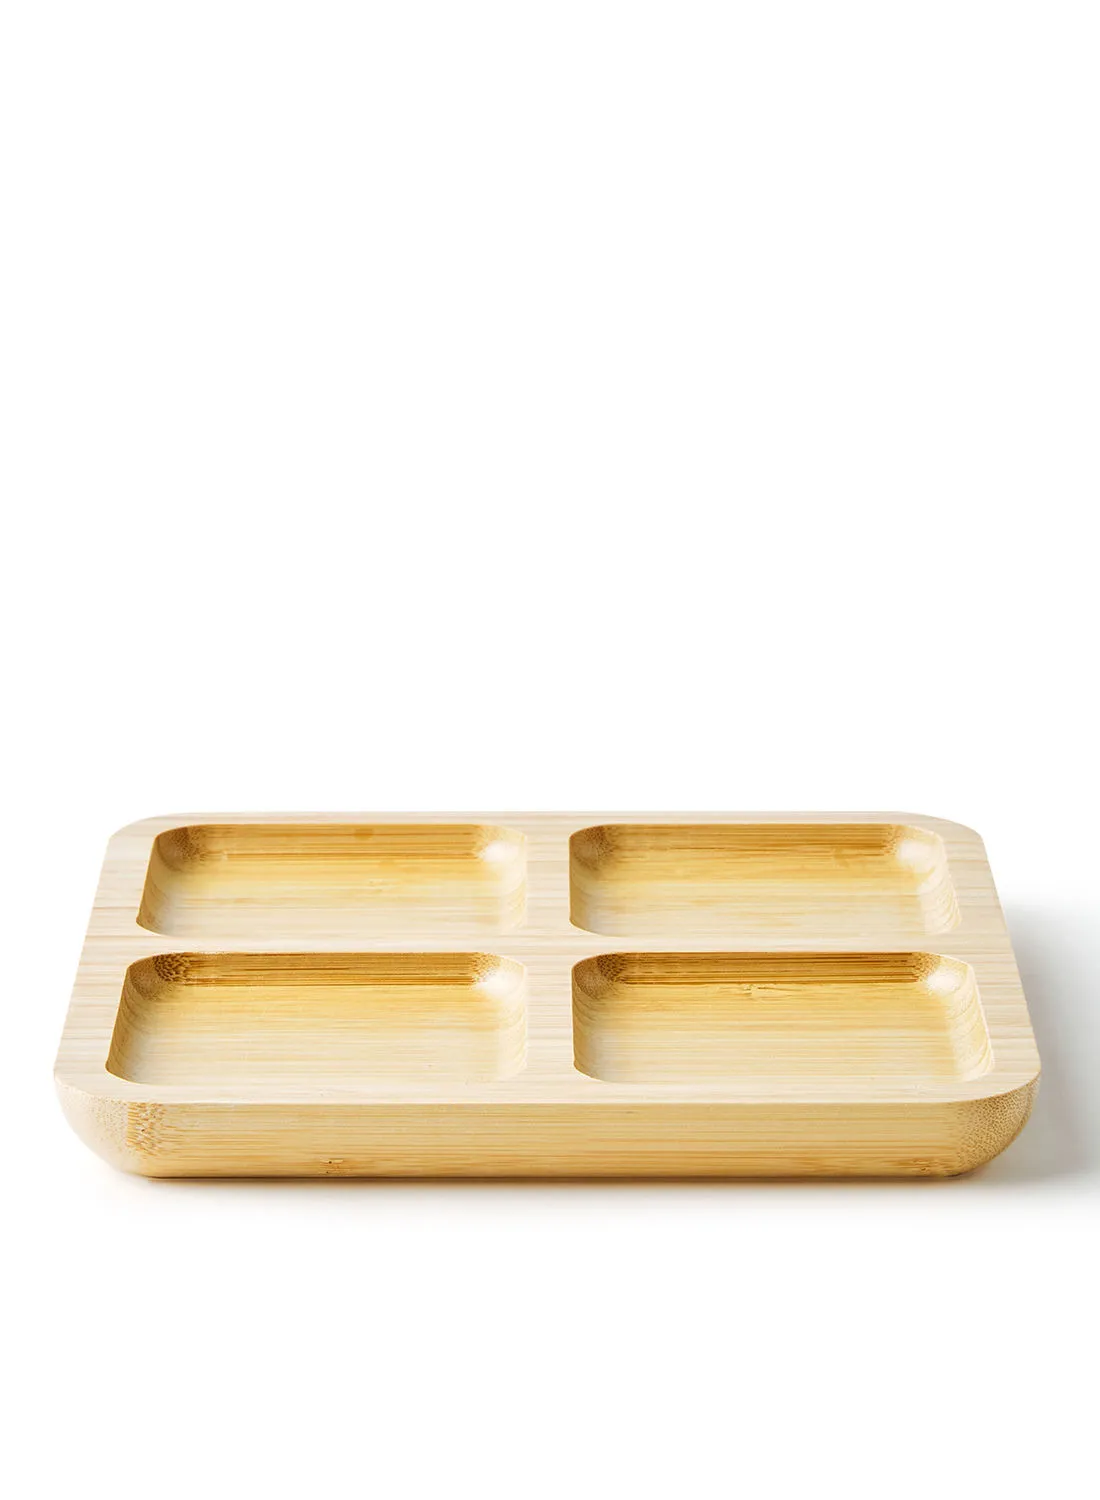 طبق تقديم شرق نون - مصنوع من الخيزران - مربع (صغير) - طبق التقديم - أطباق التقديم - صينية بني